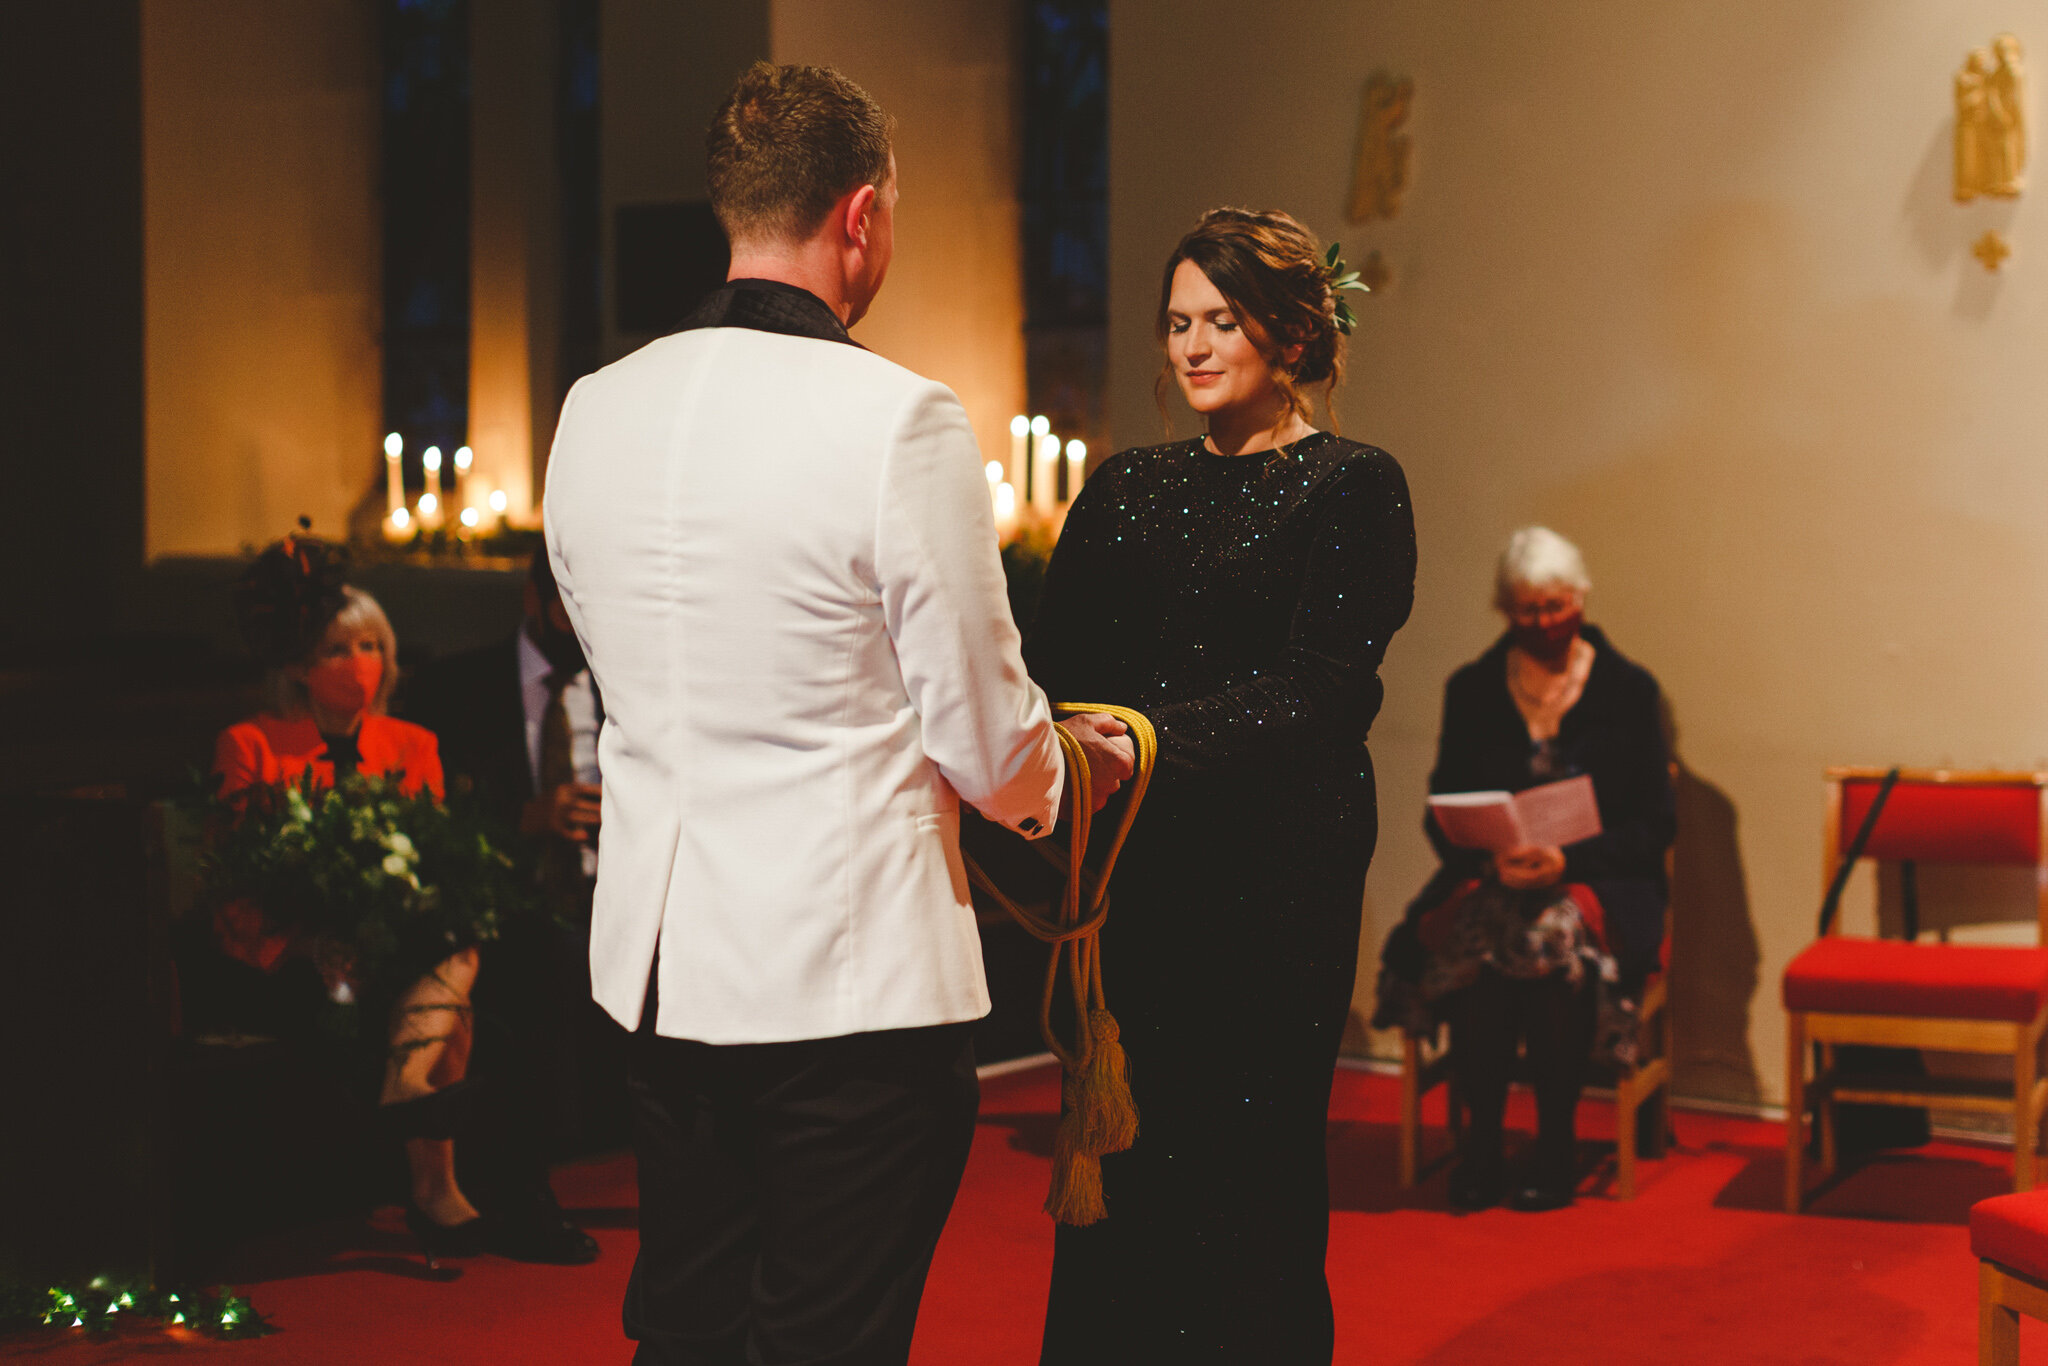 derbyshire-wedding-elopement-photographer-best-2020-144.jpg